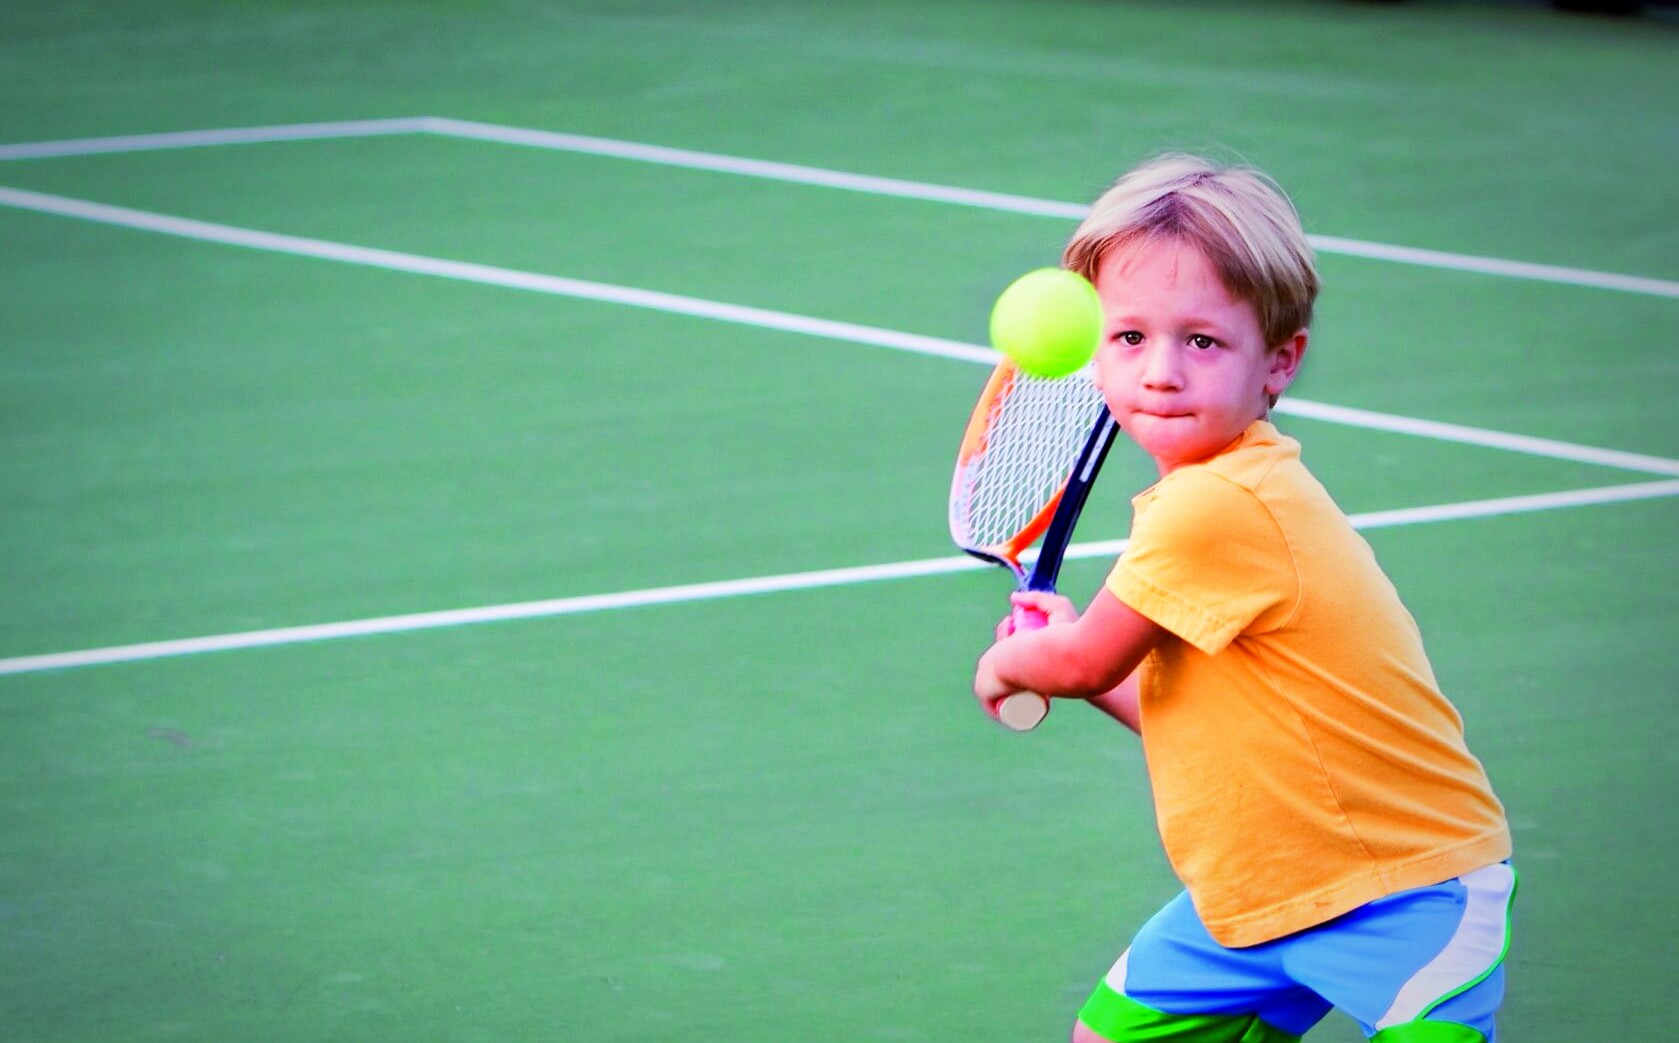 Do you enjoy playing sports. Детский теннис. Теннис дети. Большой теннис дети. Занятием тенниса для детей.